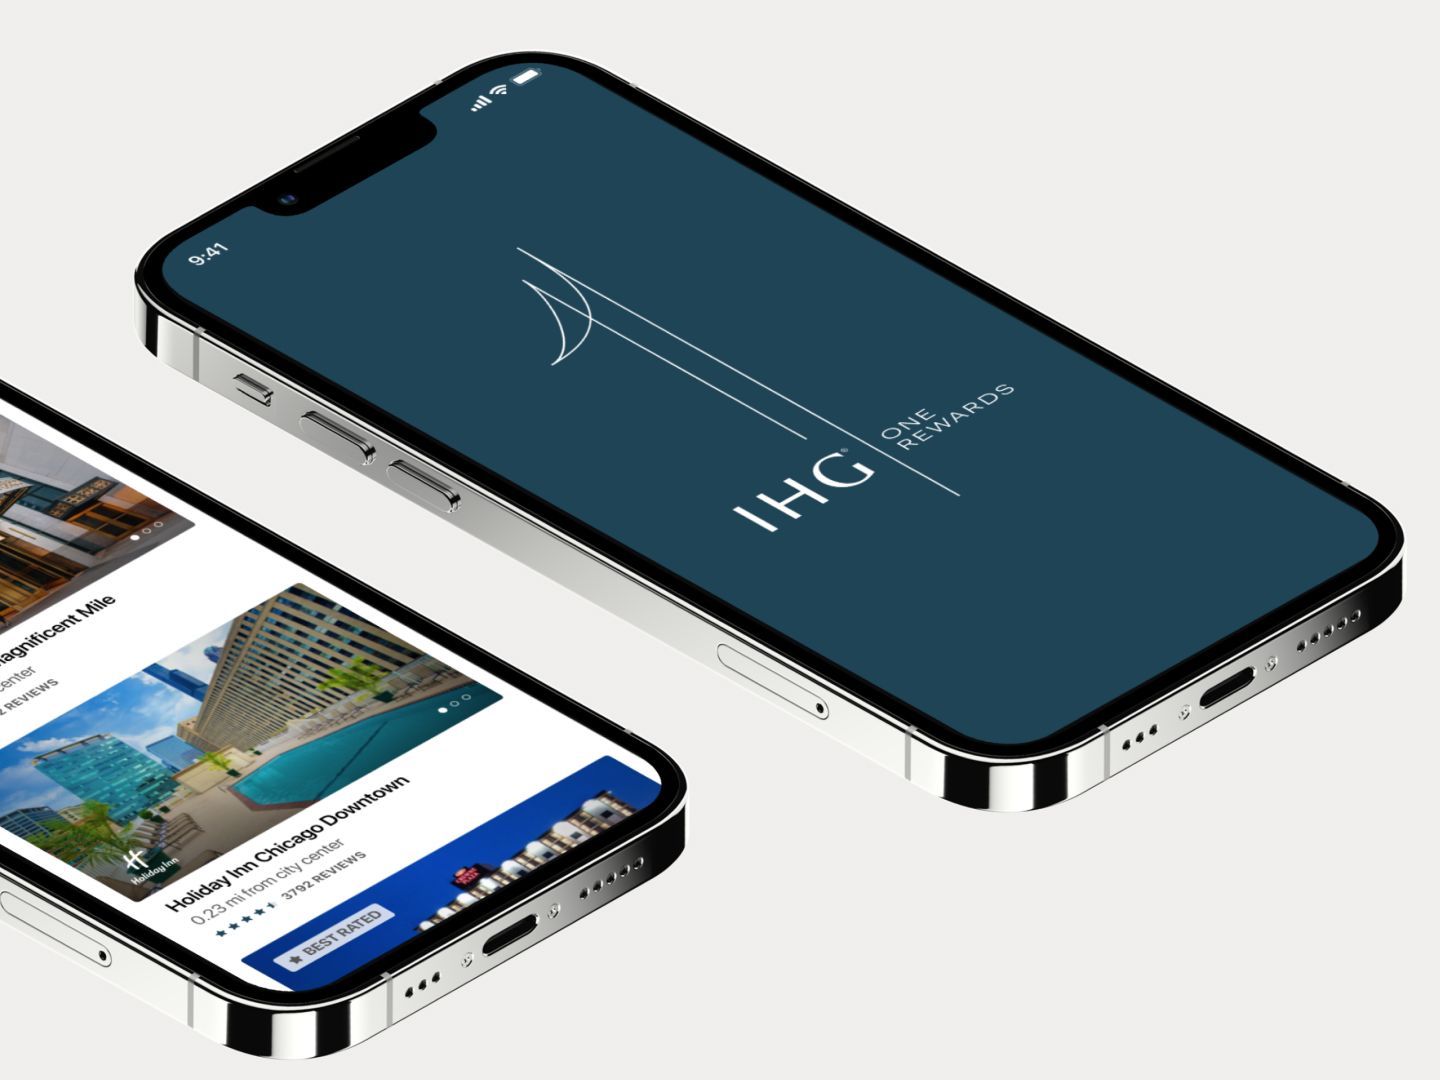 IHG One Rewardsアプリを表示しているスマートフォンの画面